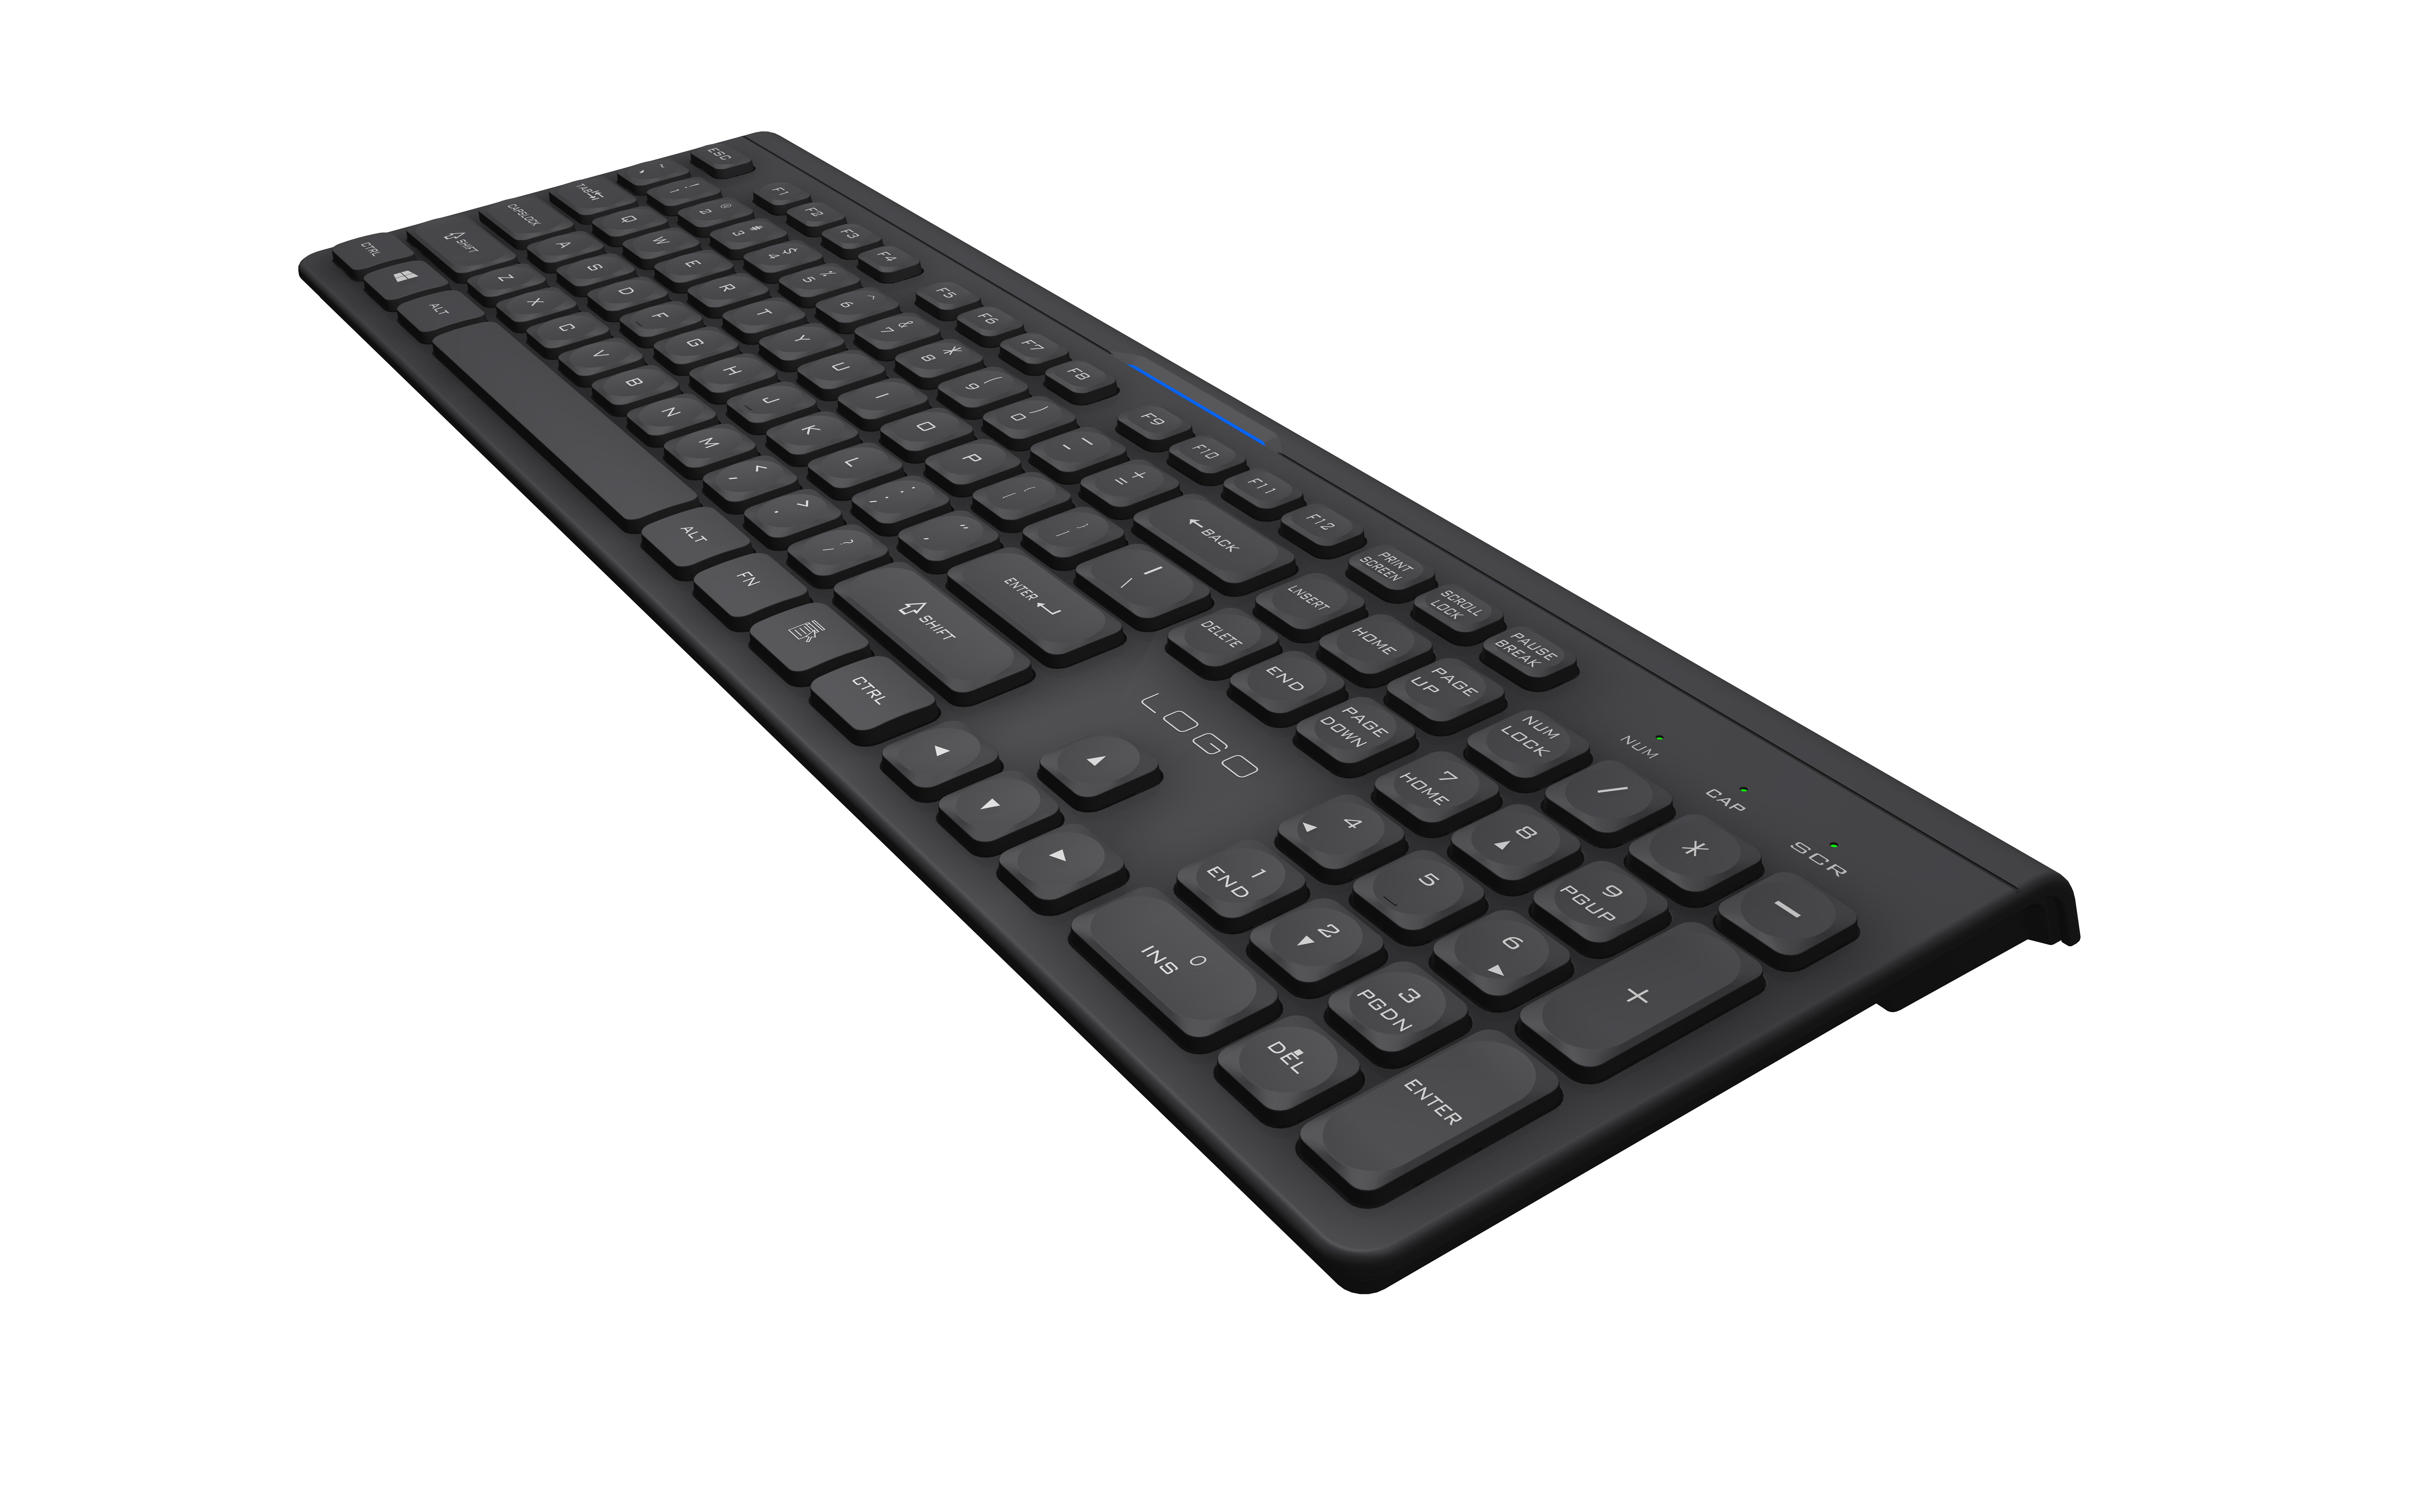 KB768 Slim Wireless Office Keyboard